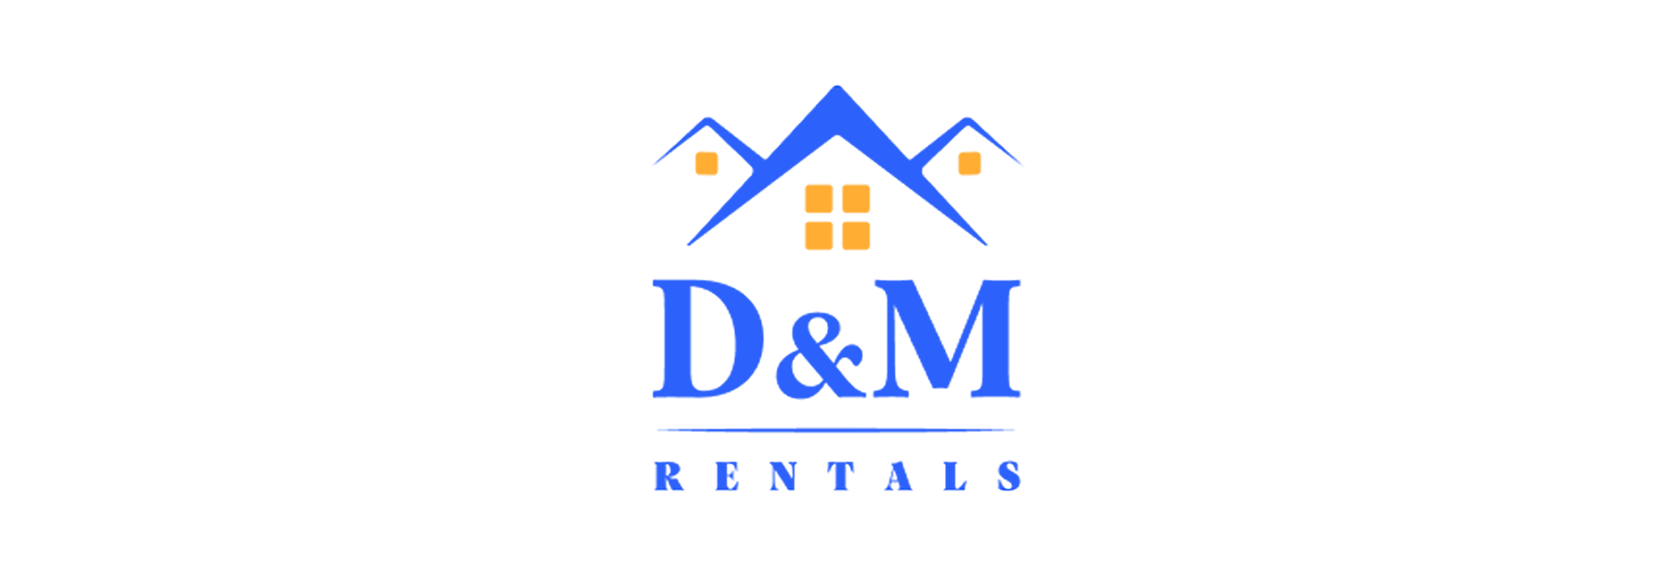 D & M Rentals Logo